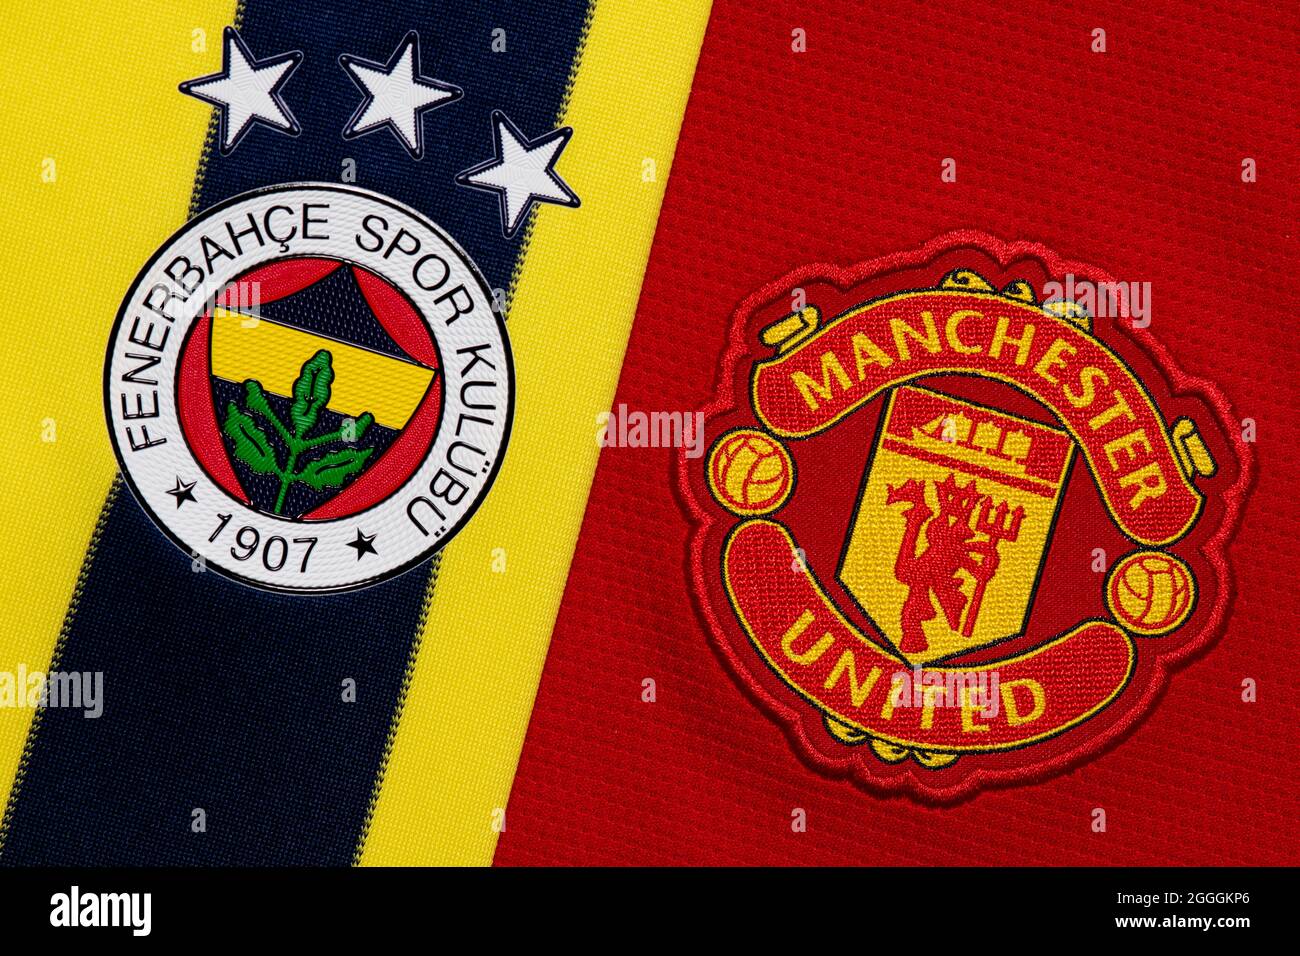 Nahaufnahme des Vereinswappens von Manchester United & Fenerbahce. Stockfoto